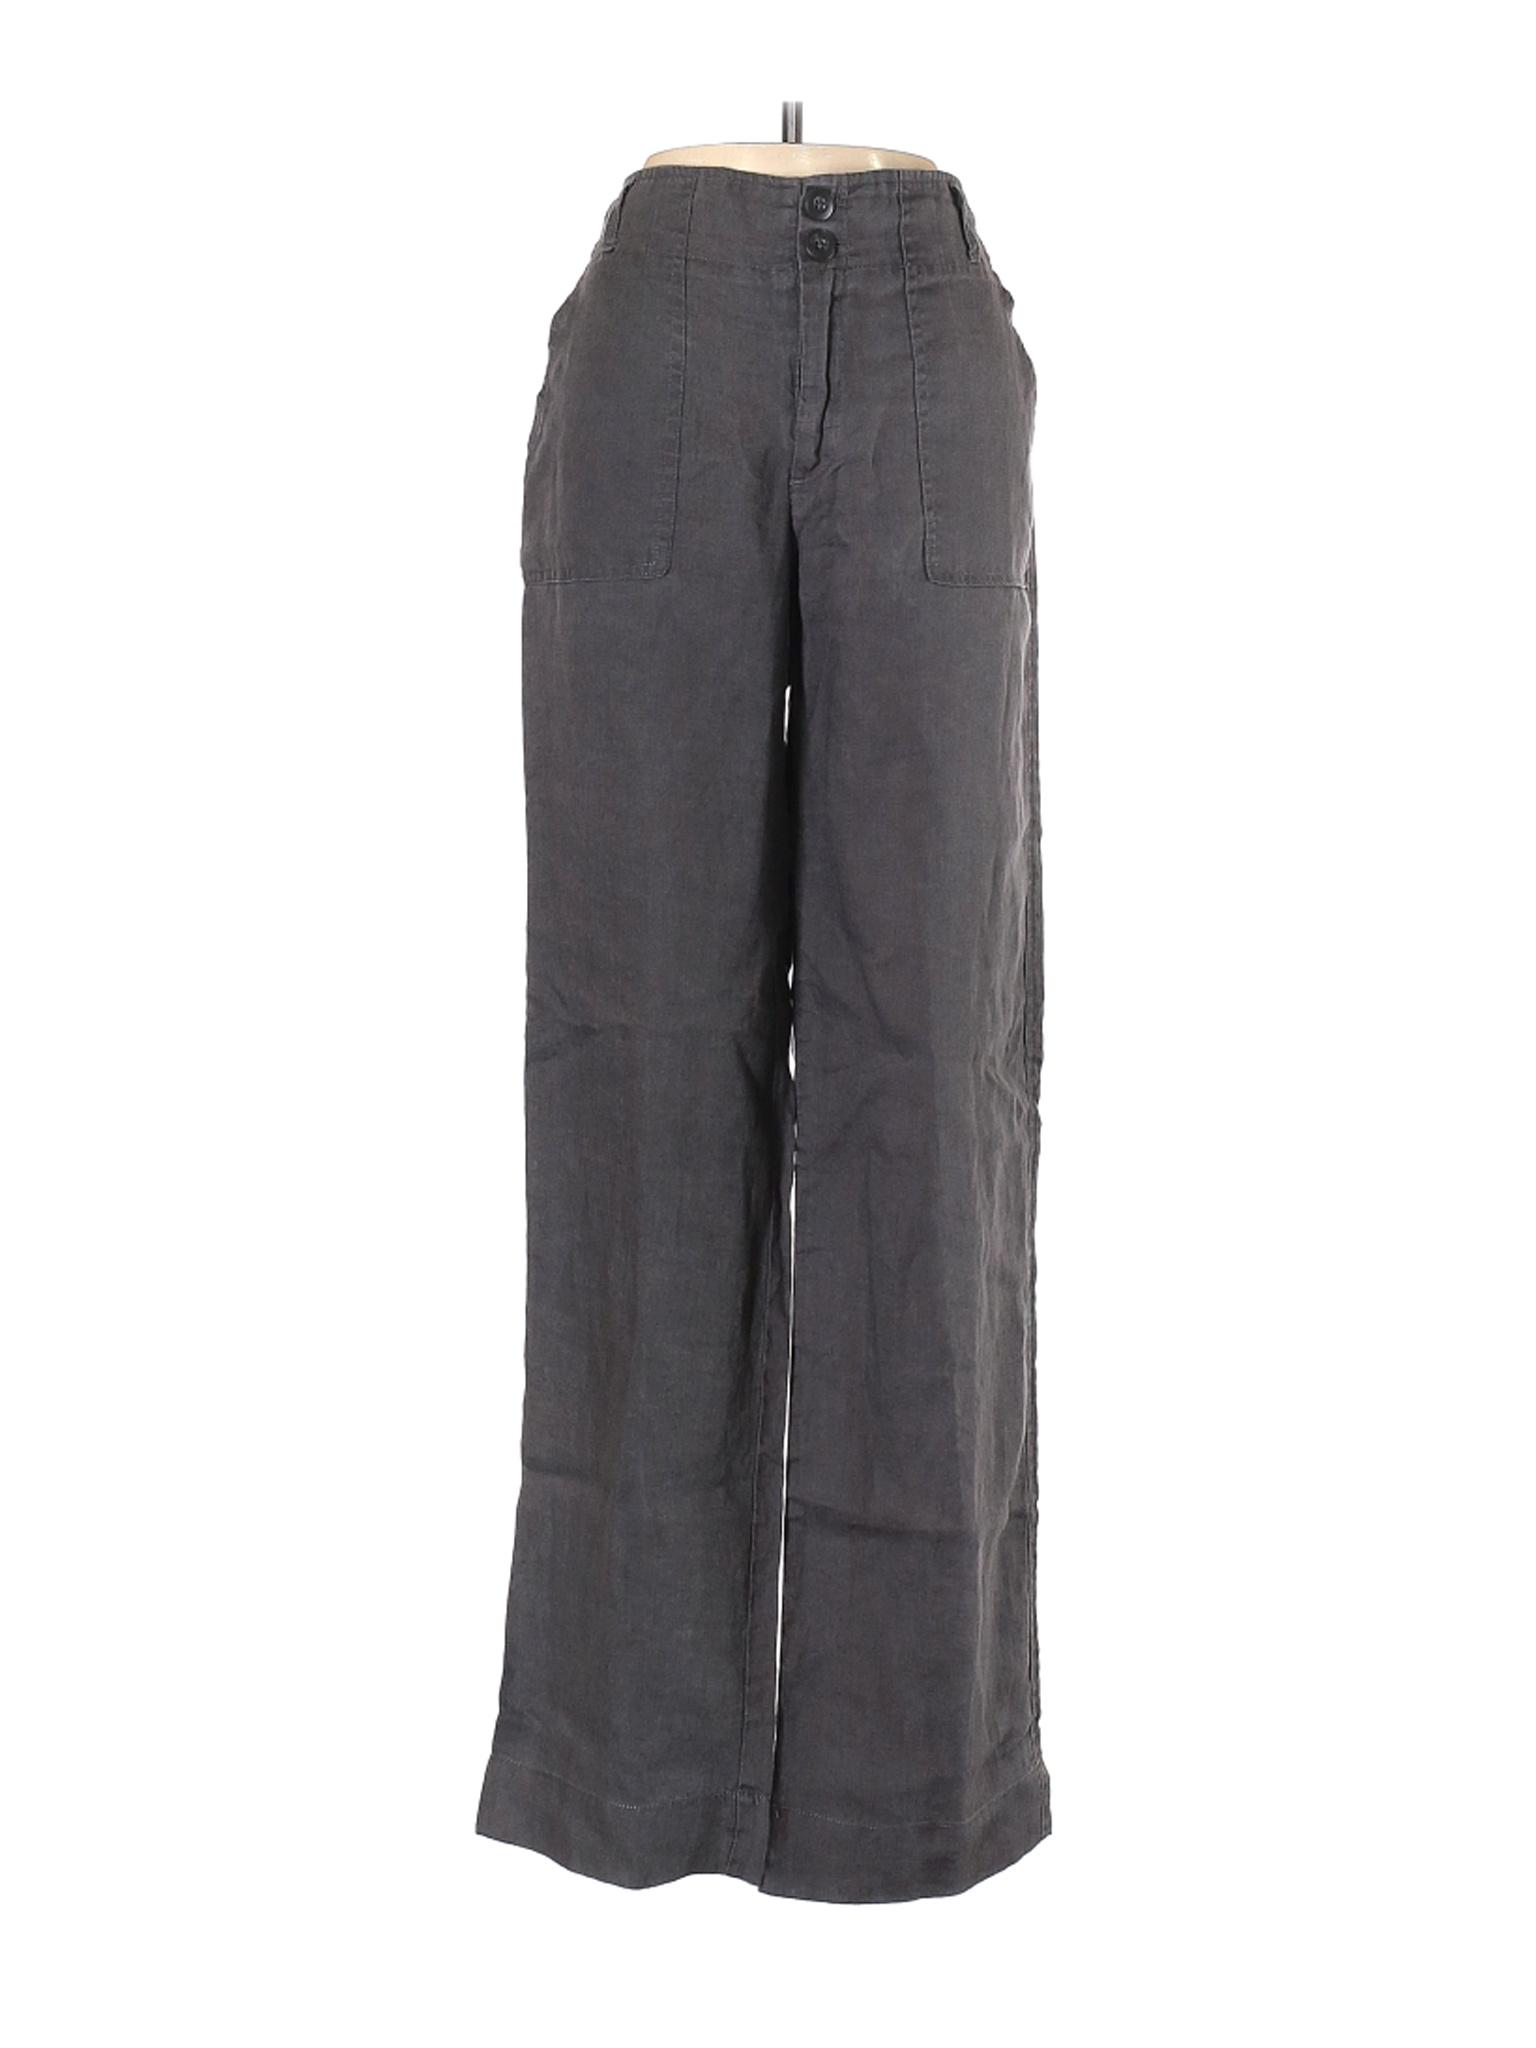 Cynthia Rowley TJX Women Gray Linen Pants 4 | eBay